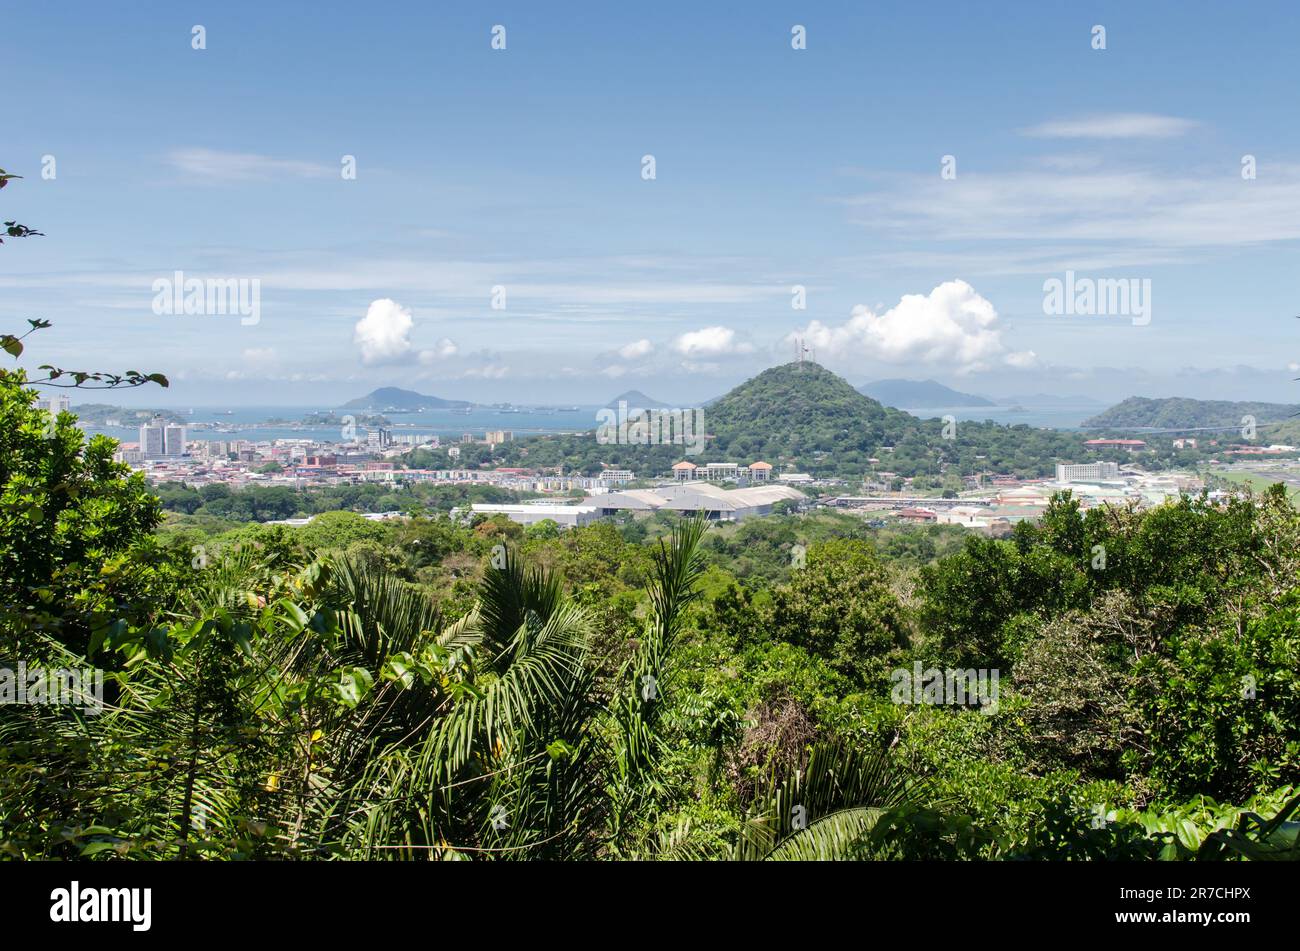 Skyline von Panama City, dies ist der älteste Teil der Stadt. Der berühmte Ancon Hill ist am Horizont rechts zu sehen. Sie können auch die Gegend um Albrook sehen Stockfoto